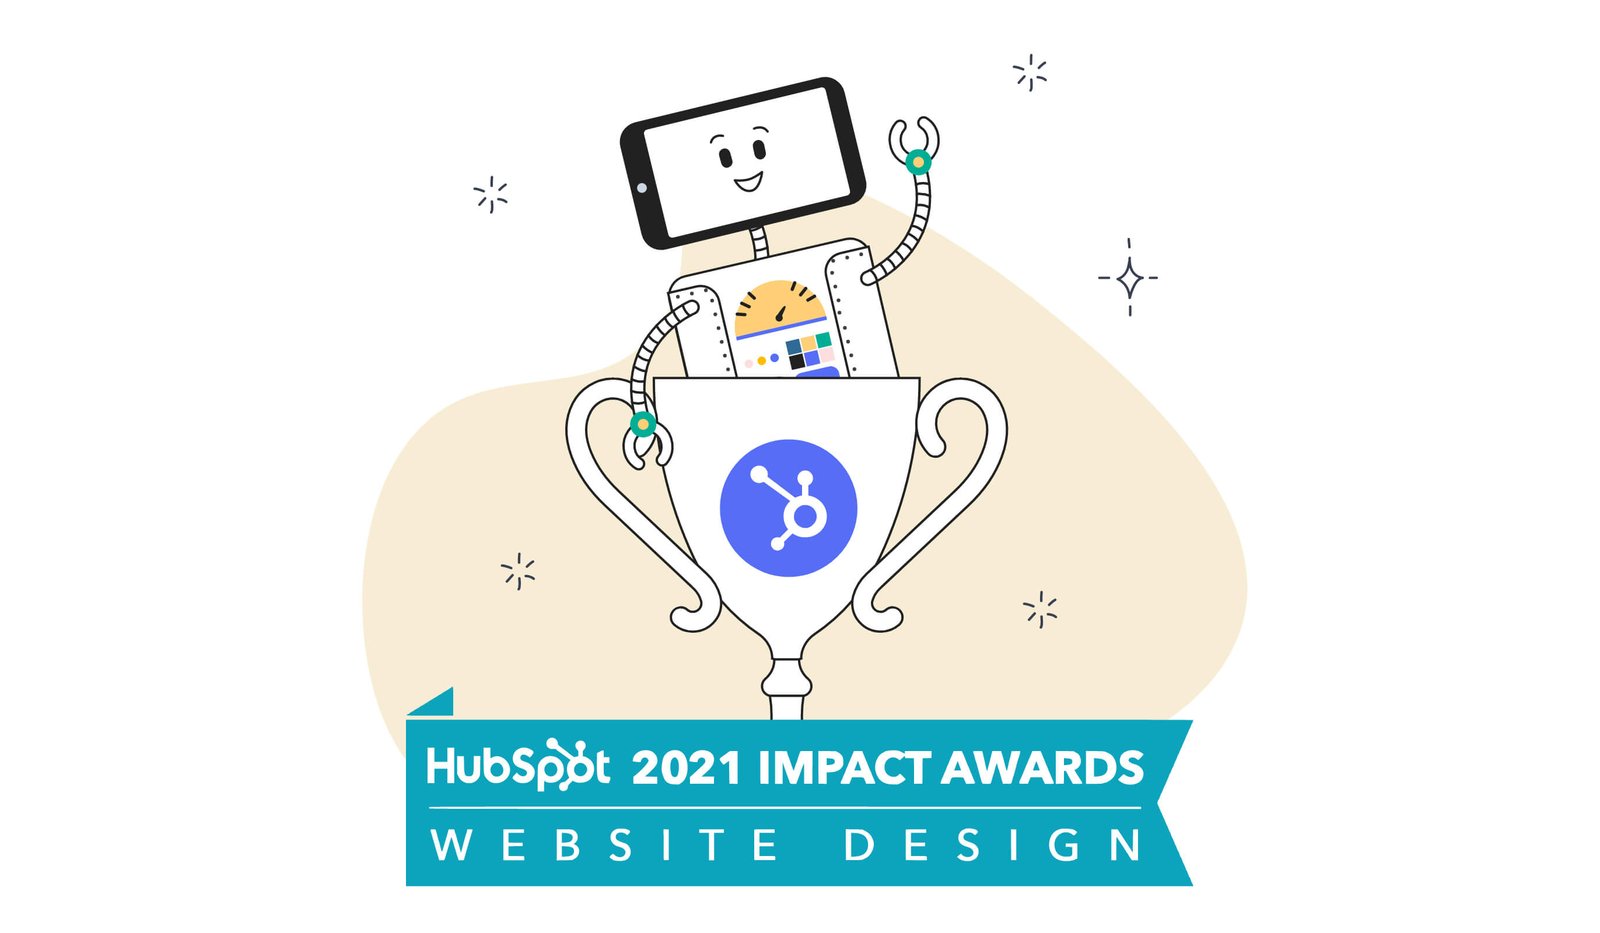 Articulate Marketing wins HubSpot Impact Award for website design